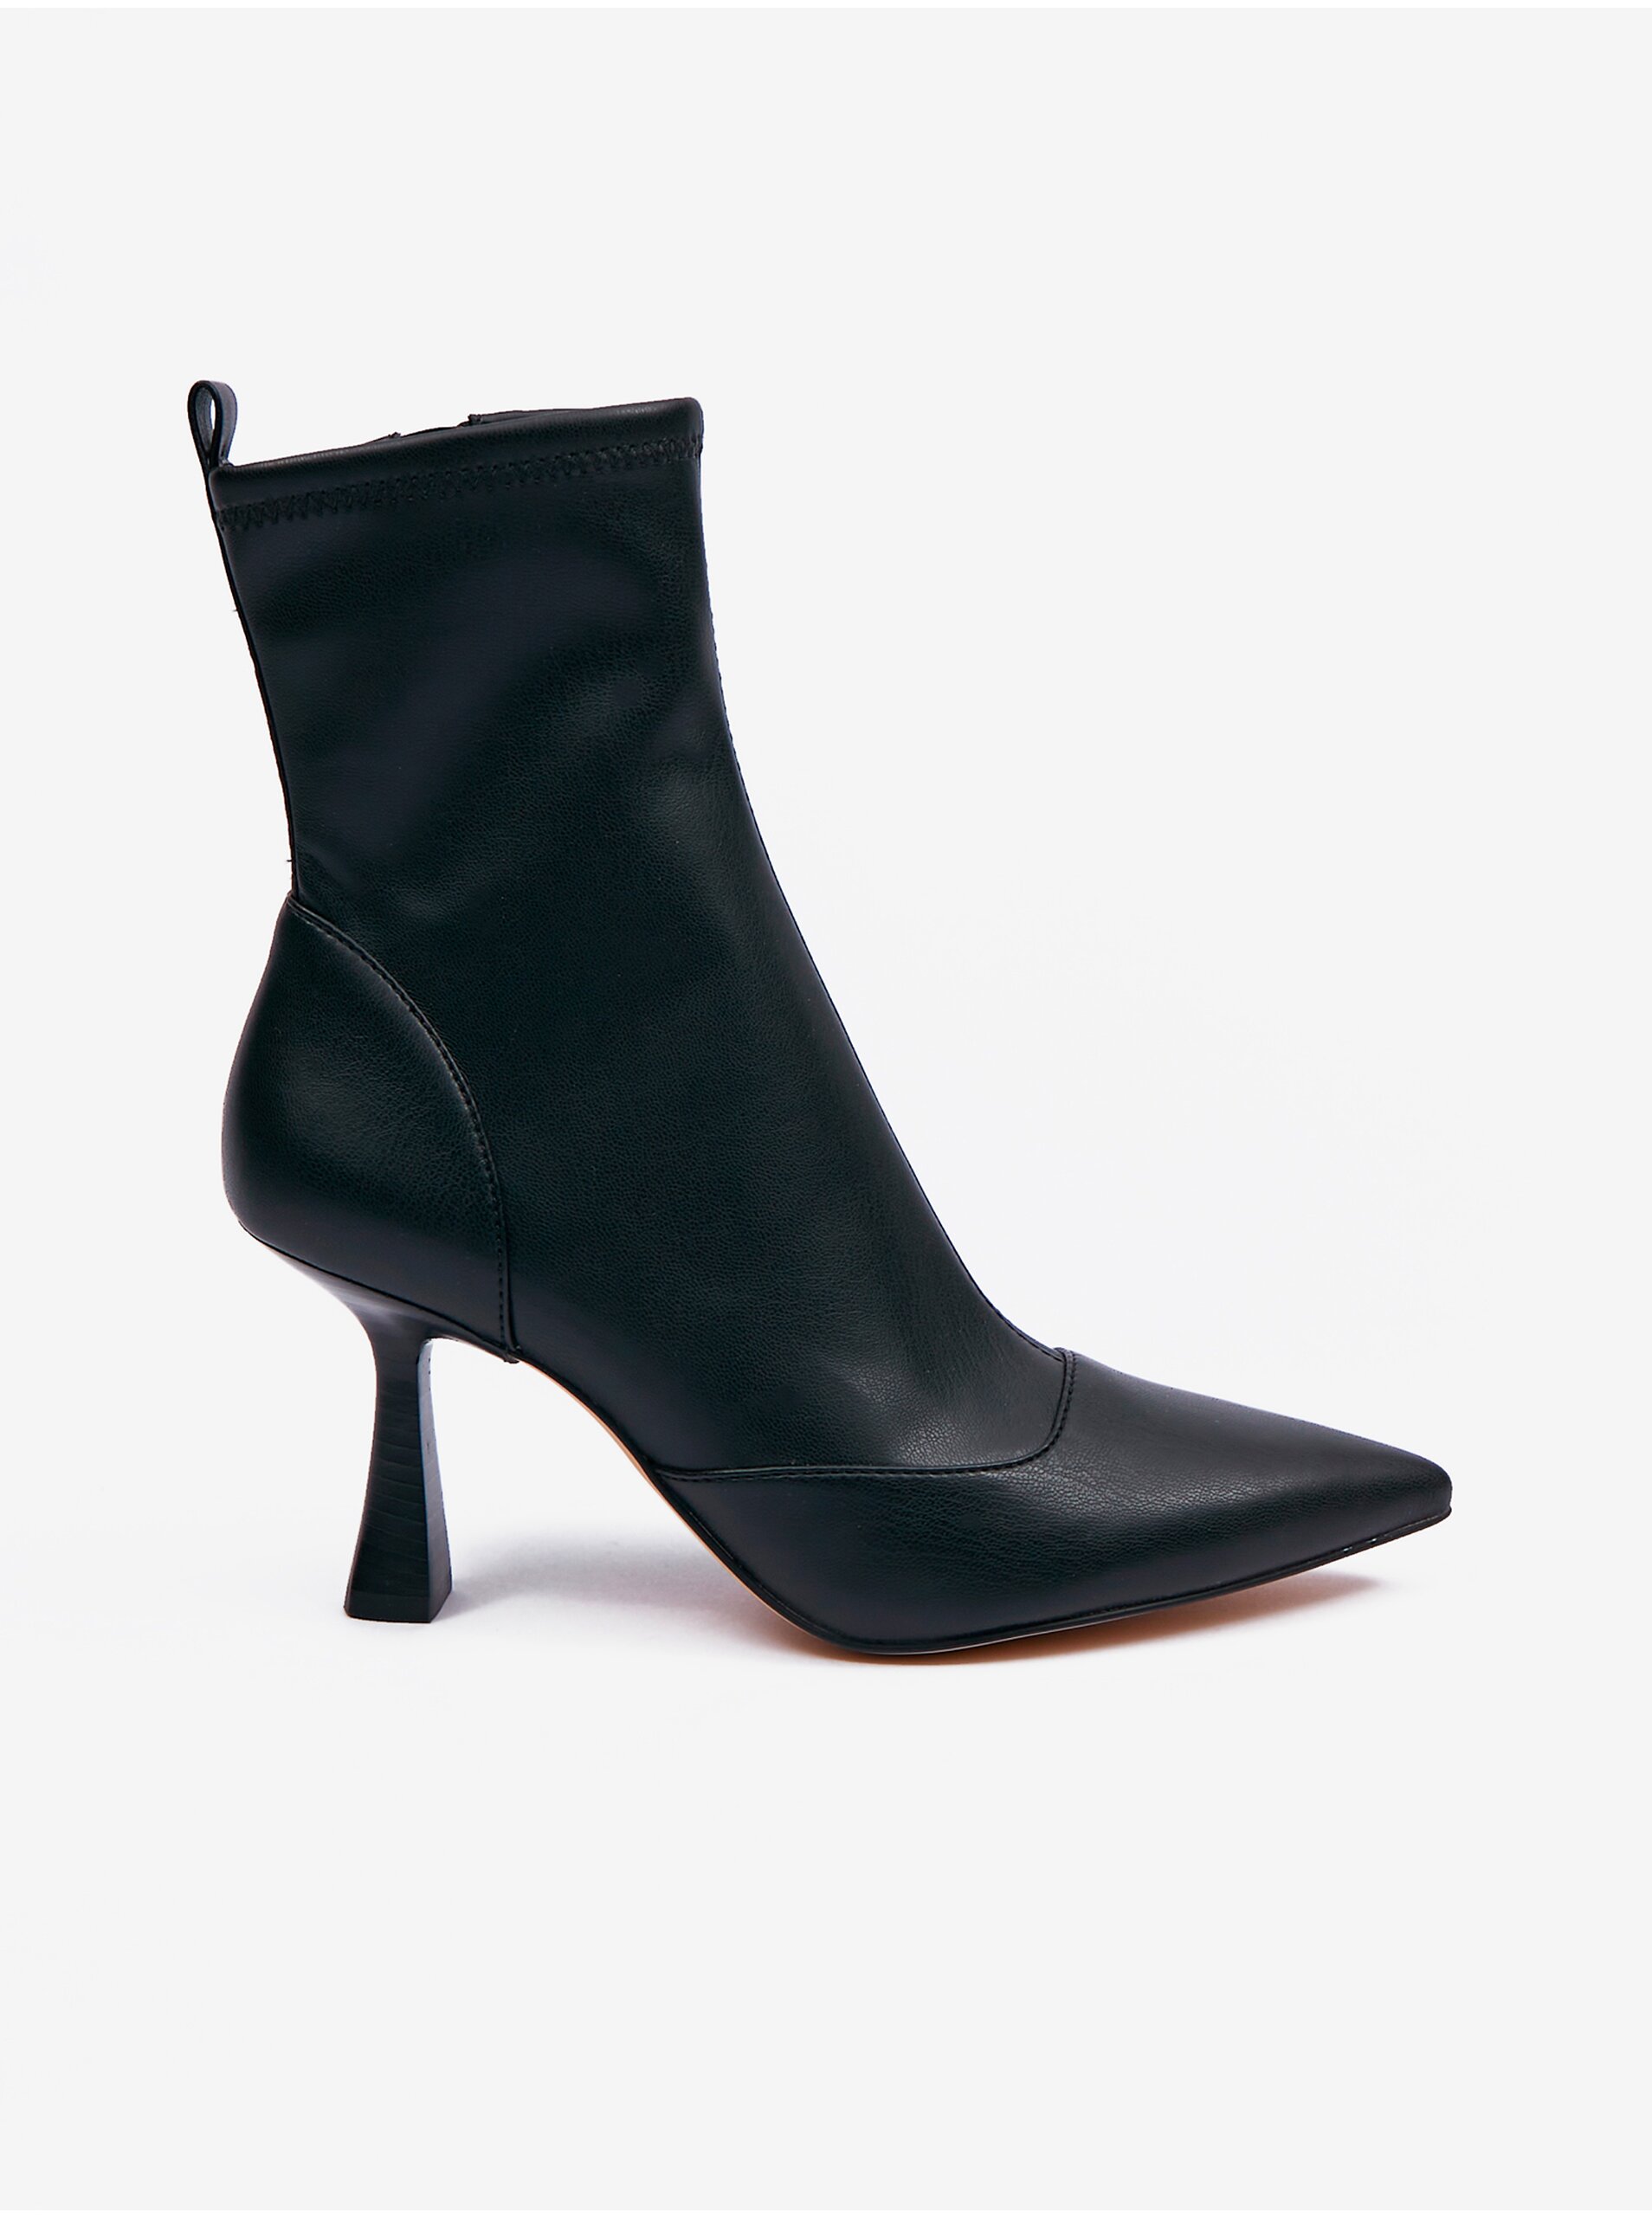 E-shop Čierne dámske členkové topánky na podpätku Michael Kors Clara